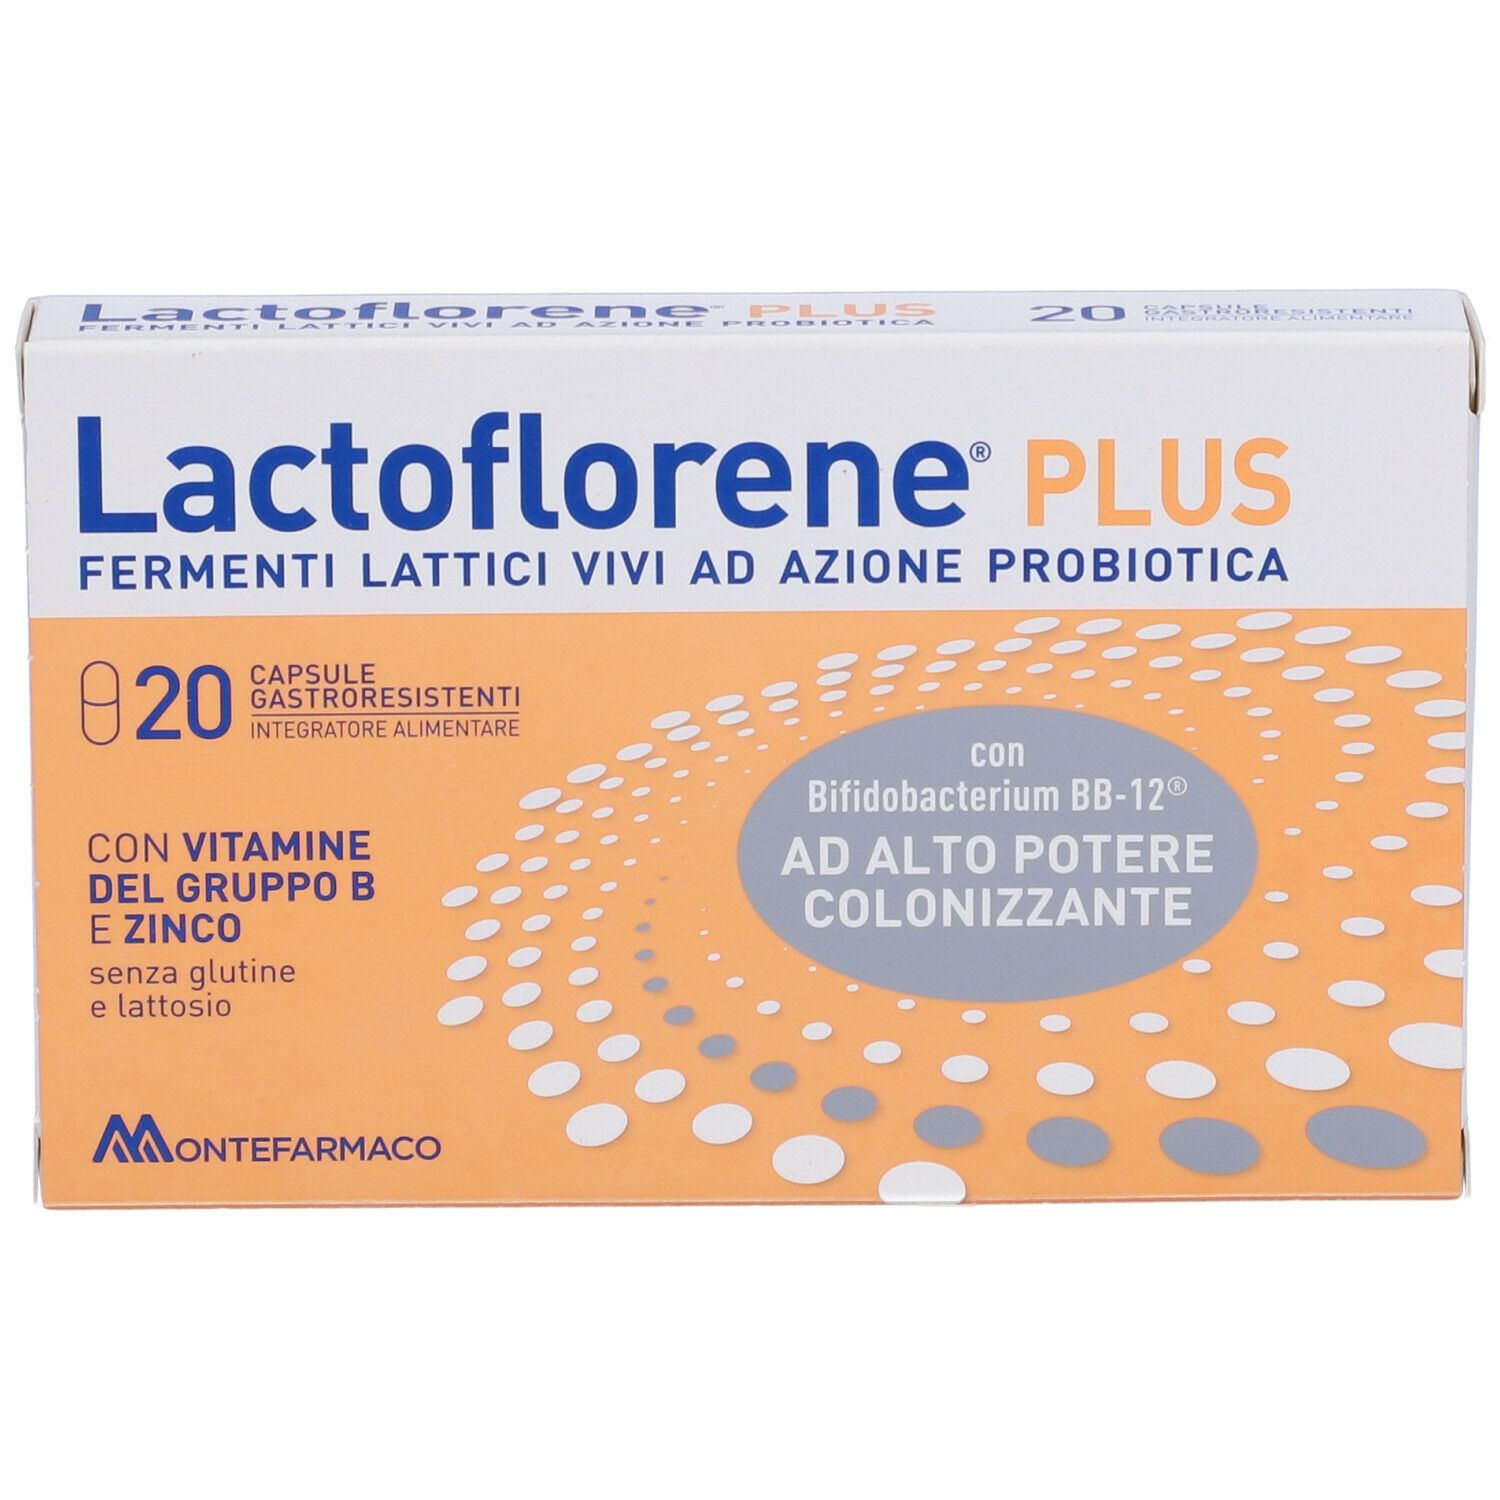 Lactoflorene® PLUS